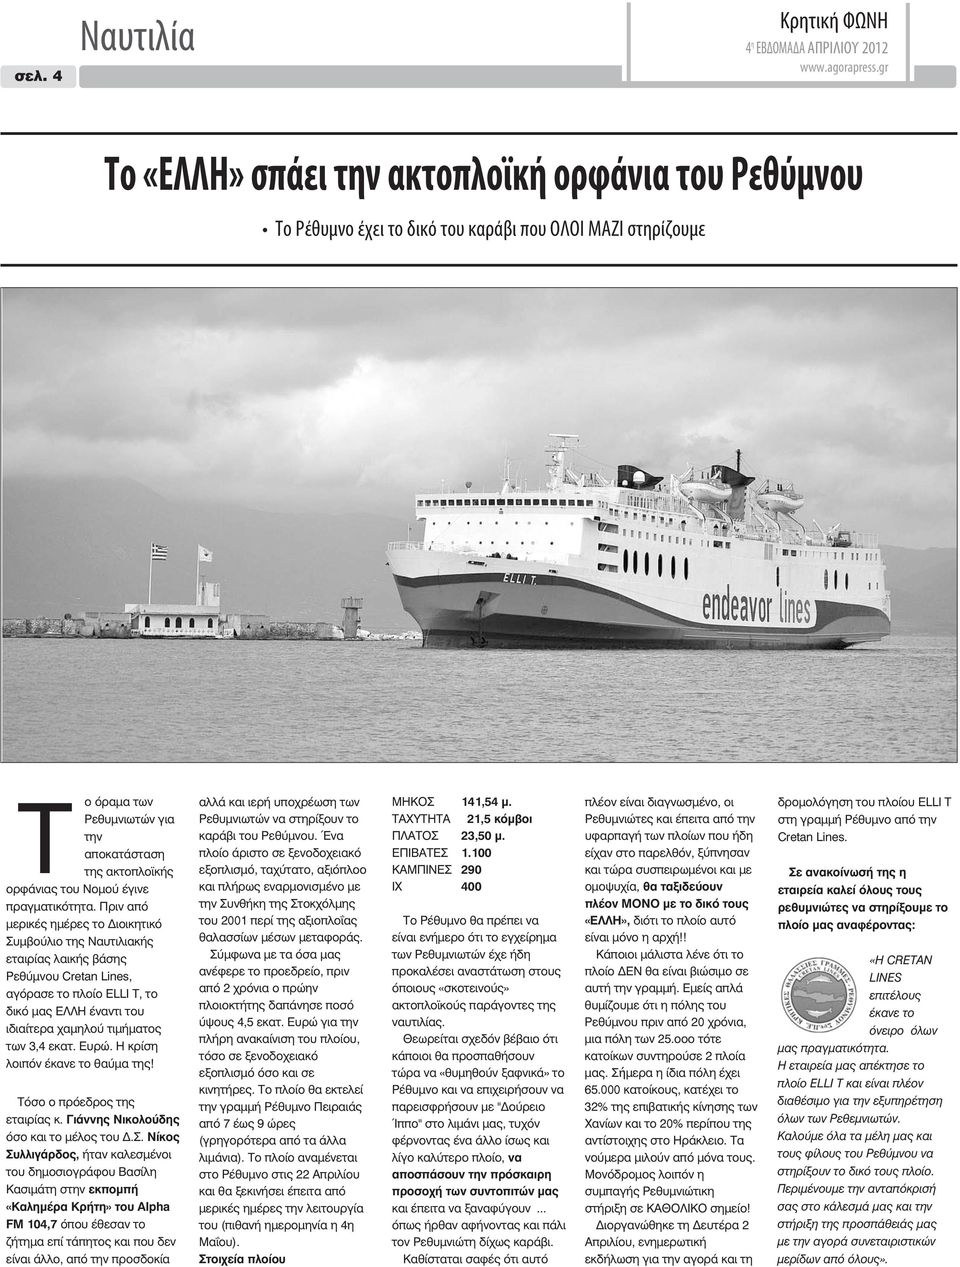 Πριν από μερικές ημέρες το Διοικητικό Συμβούλιο της Ναυτιλιακής εταιρίας λαικής βάσης Ρεθύμνου Cretan Lines, αγόρασε το πλοίο ELLI T, το δικό μας ΕΛΛΗ έναντι του ιδιαίτερα χαμηλού τιμήματος των 3,4